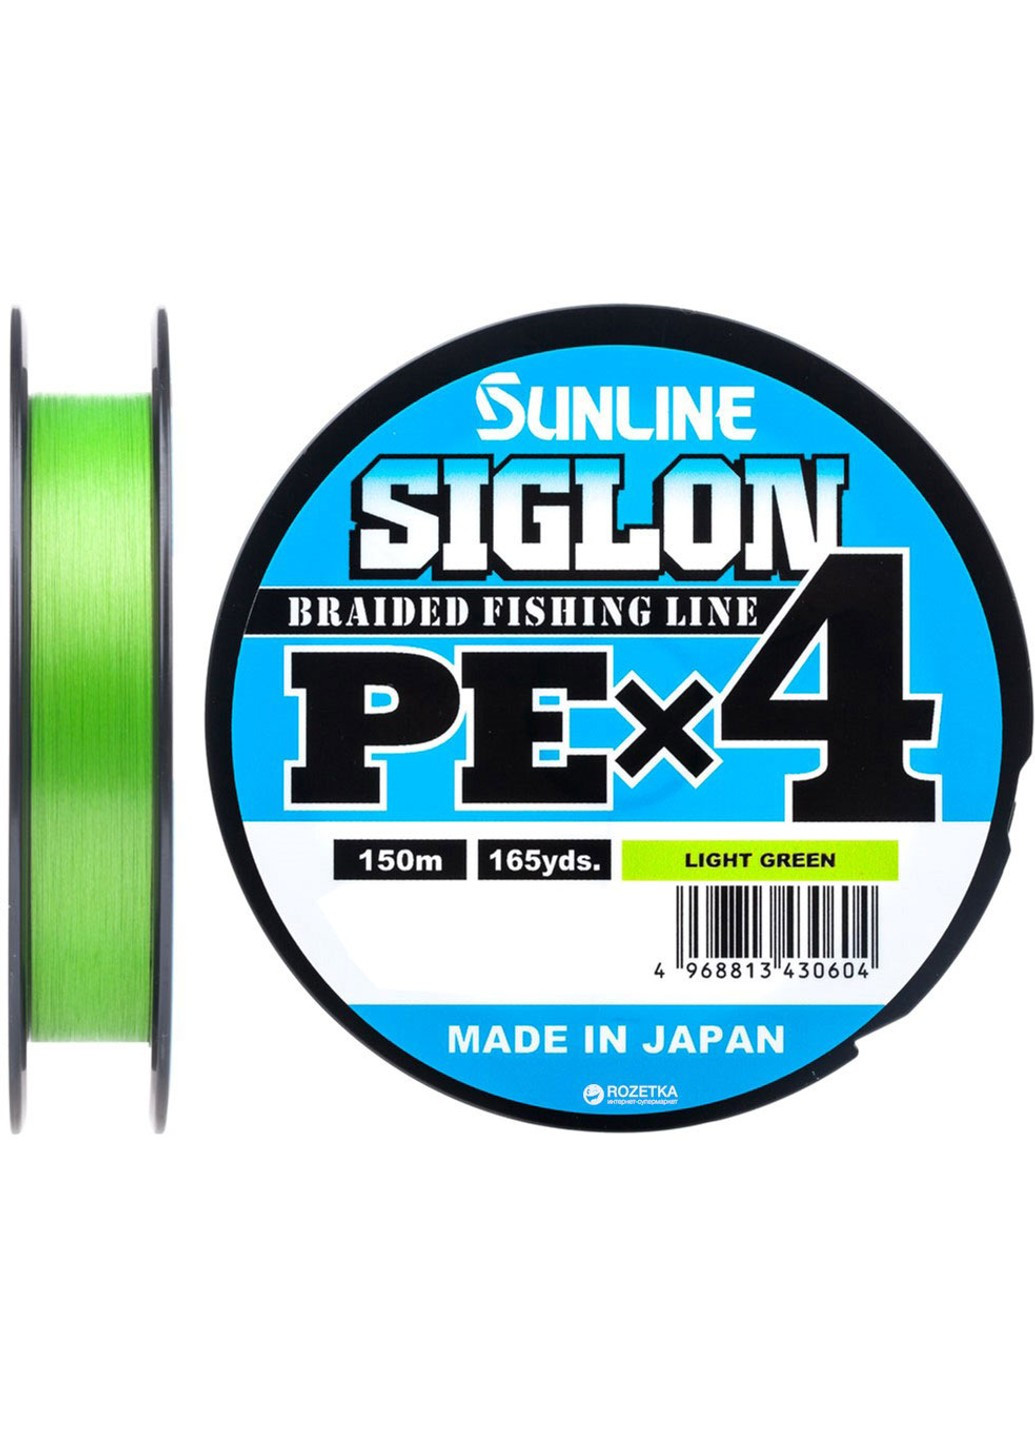 1658-09-00 Шнур Siglon PE х4 150m (салат.) # 0.2 / 0.076mm 3lb / 1.6kg Sunline (252468377)